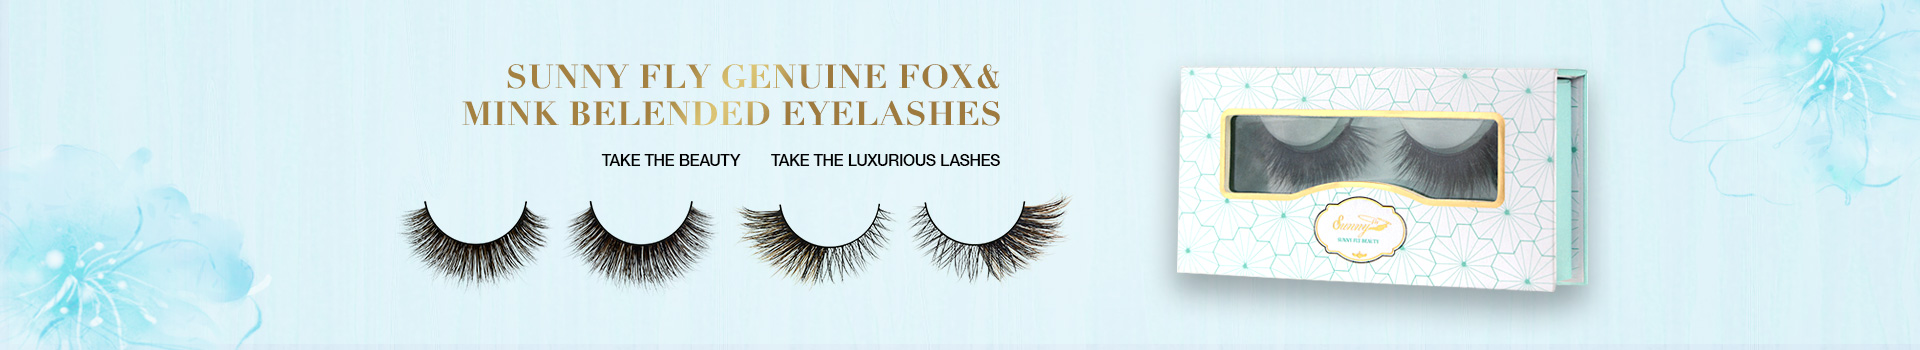 Fox & Mink Fur Blended Eyelashes FMB31